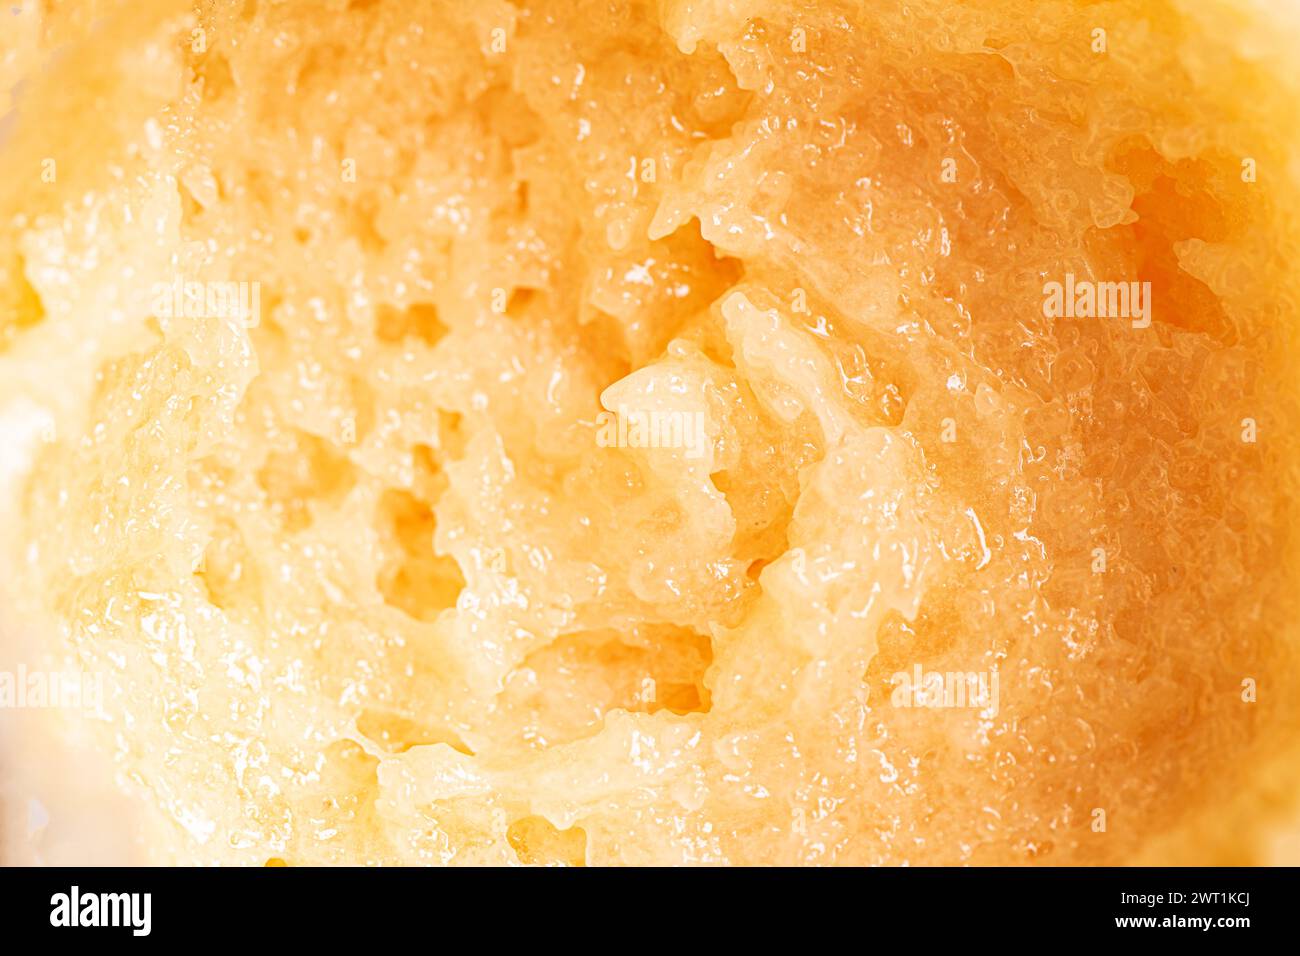 La mancha de mancha de azúcar amarillo exfoliante de la mancha de cerca. Textura de exfoliante corporal naranja con sal o azúcar. Foto de stock